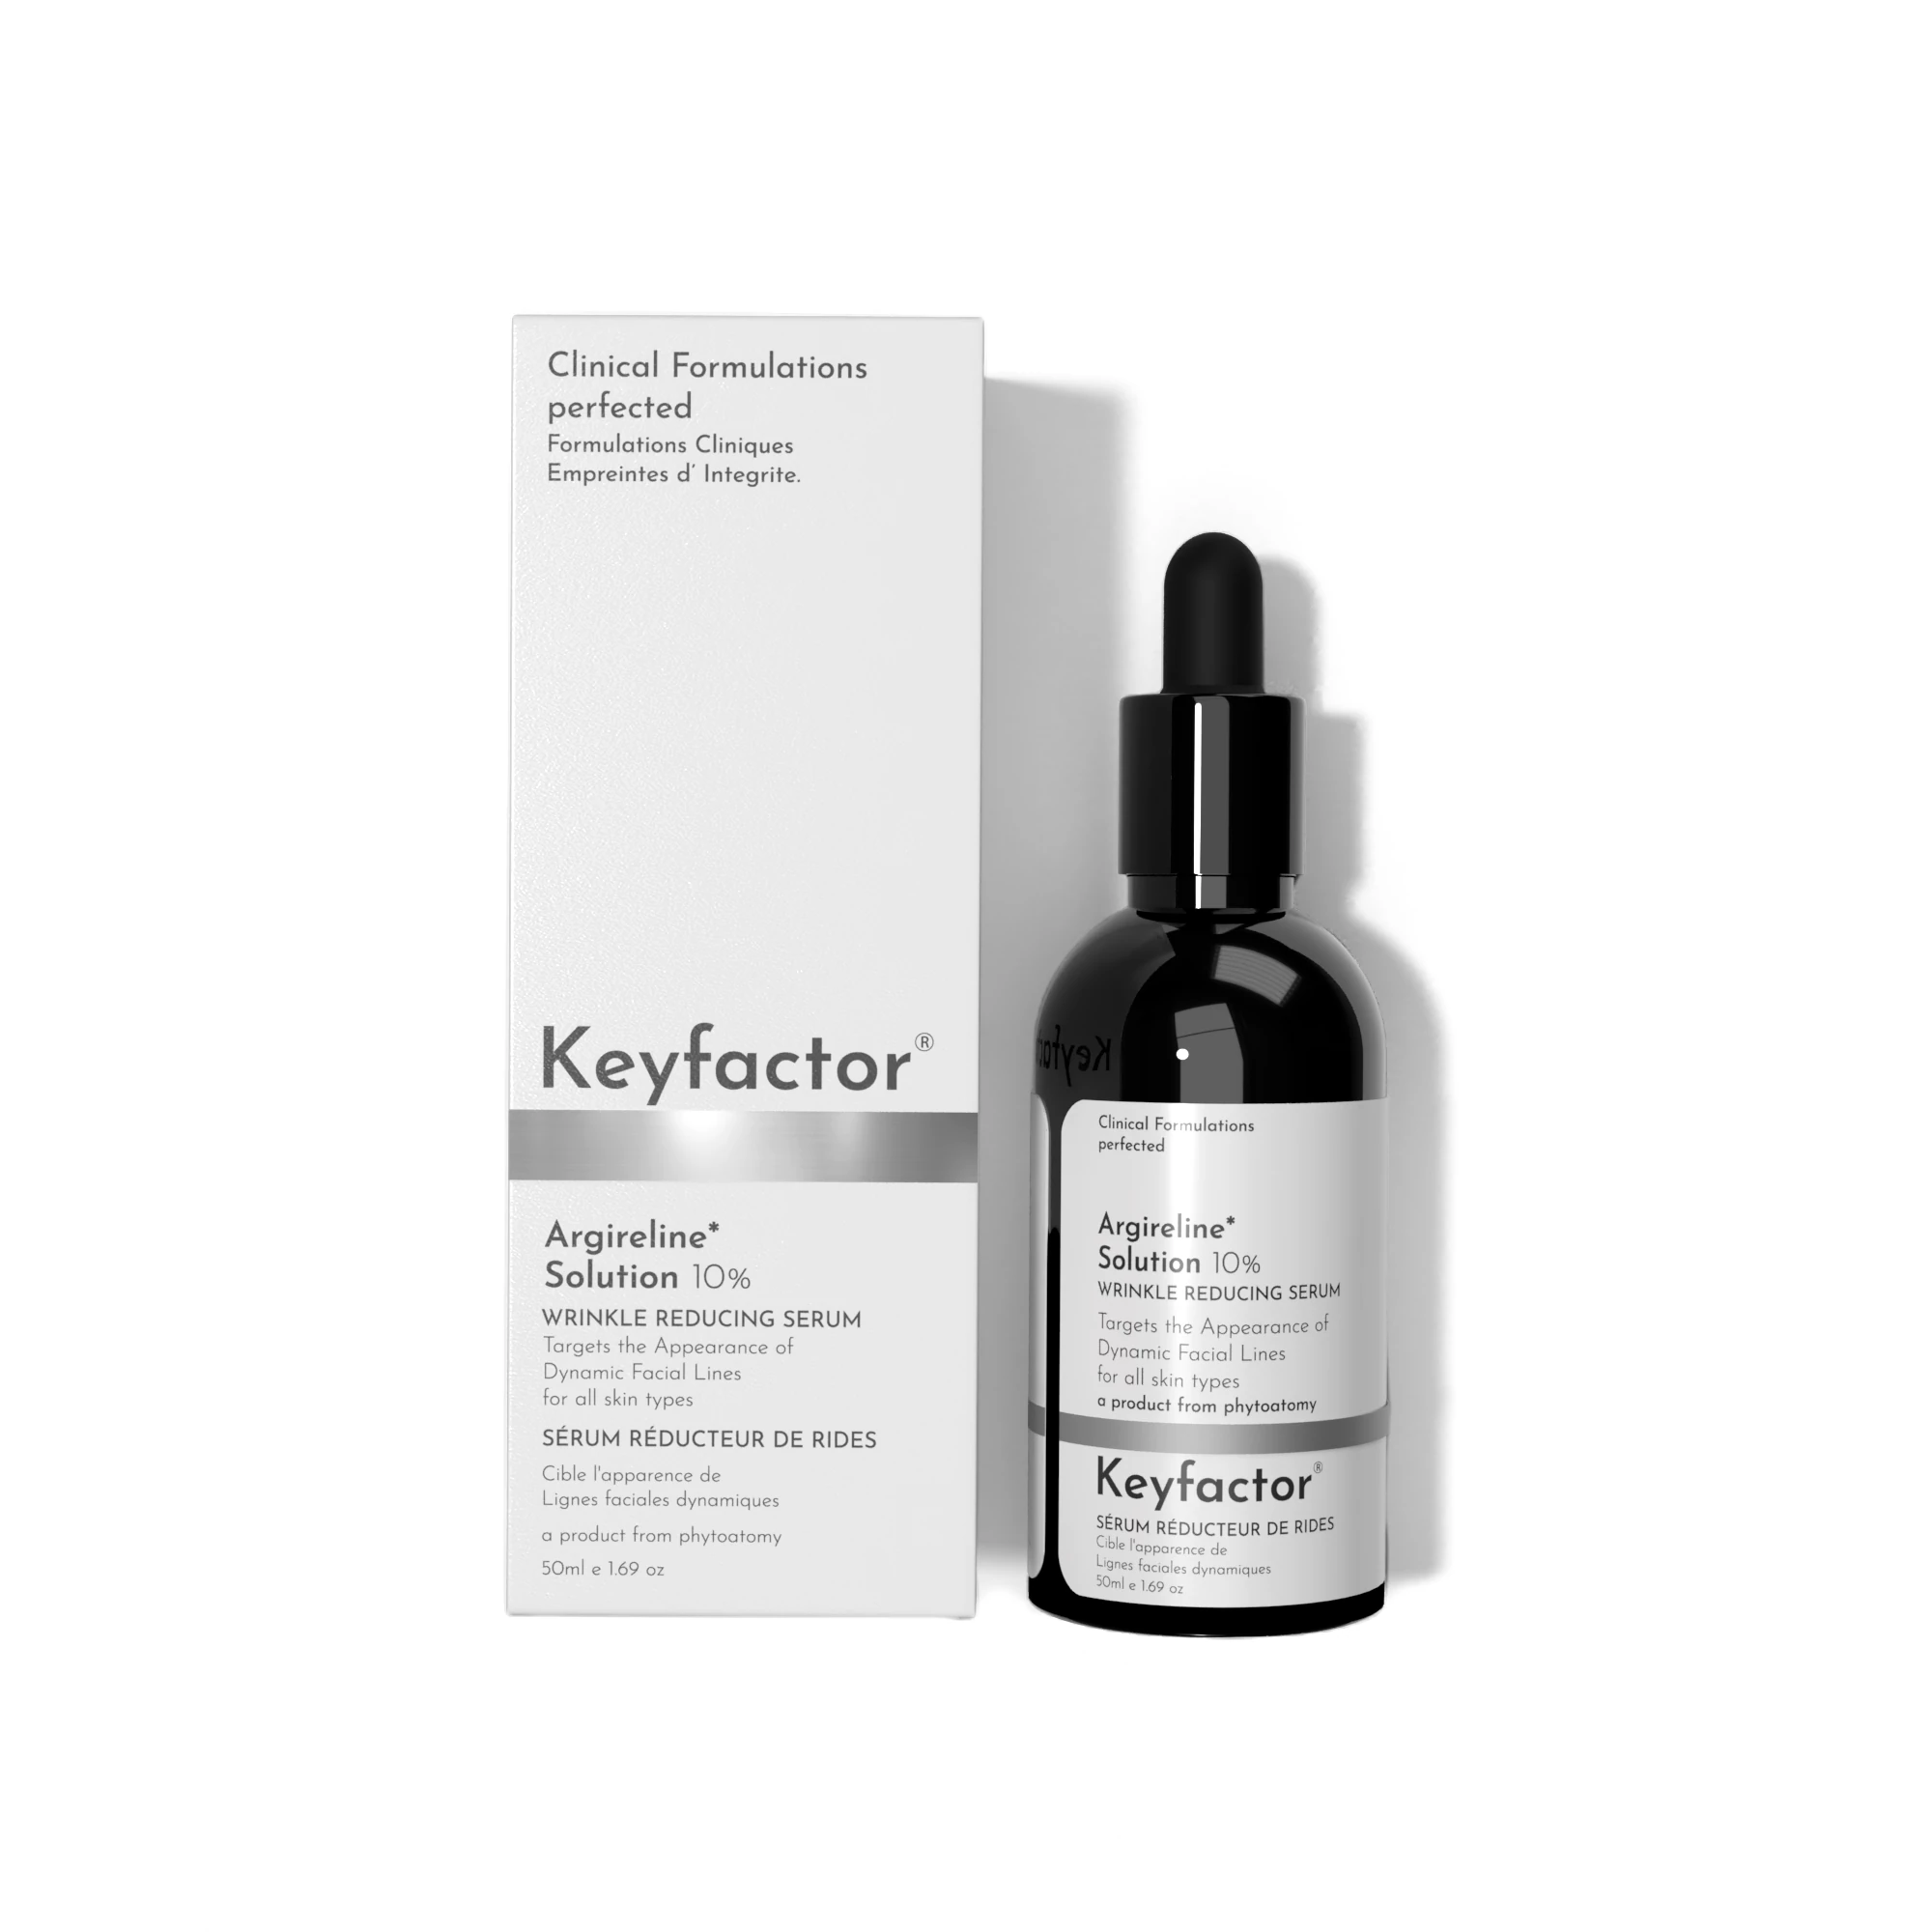 Kf-Argireline Solution 10% Wrinkle Reducing Serum -50Ml.